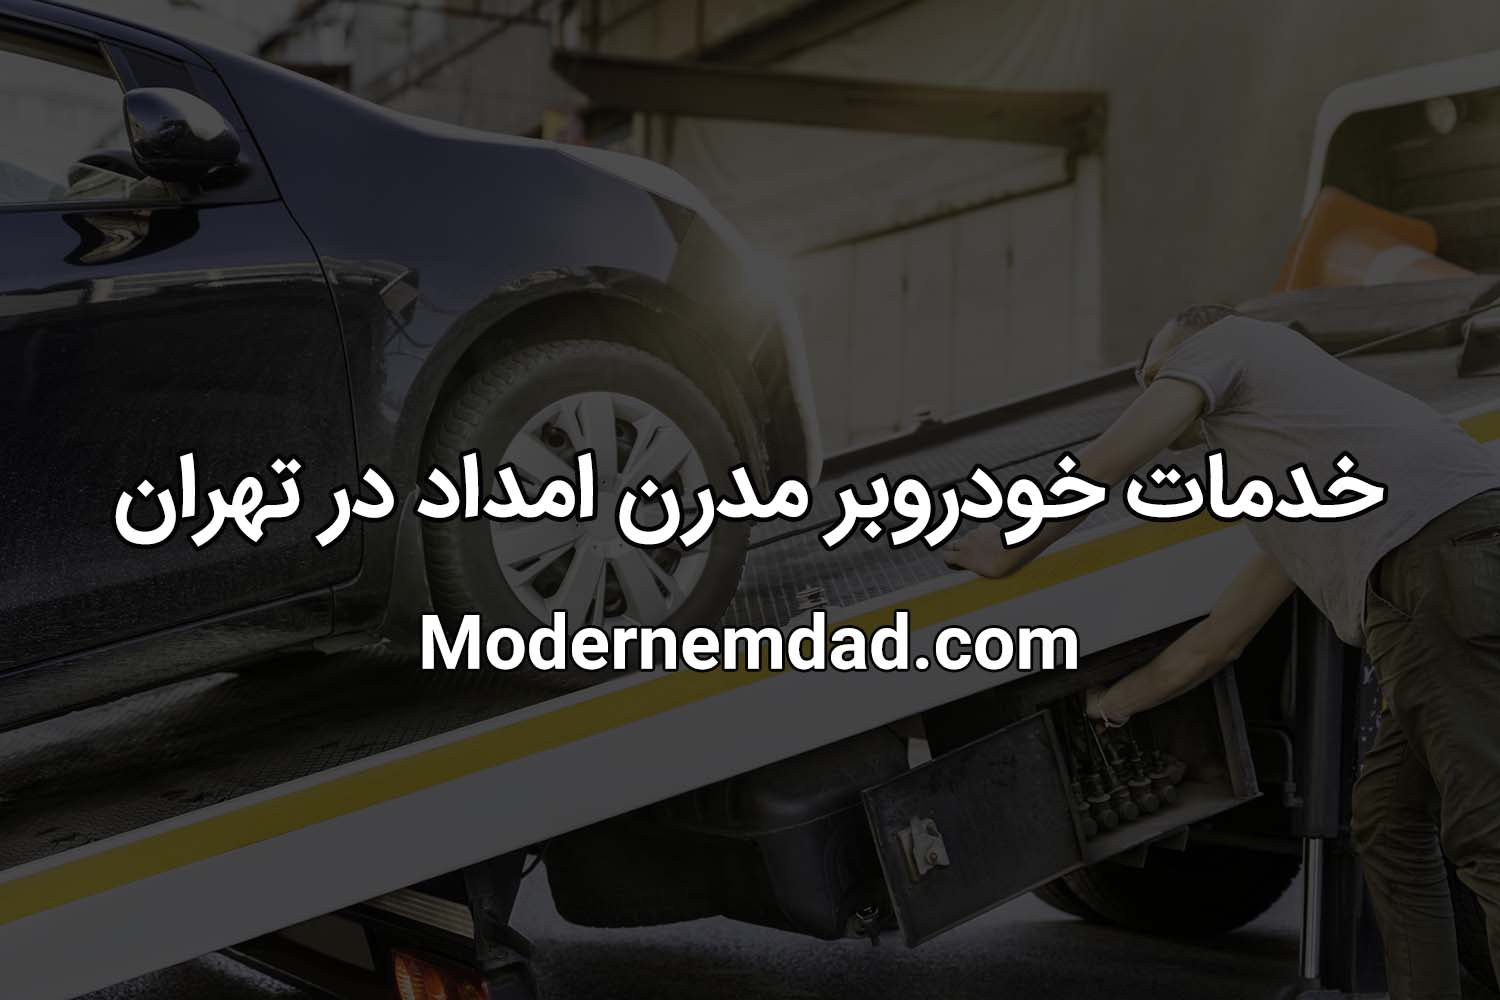 خدمات خودروبر مدرن امداد در تهران